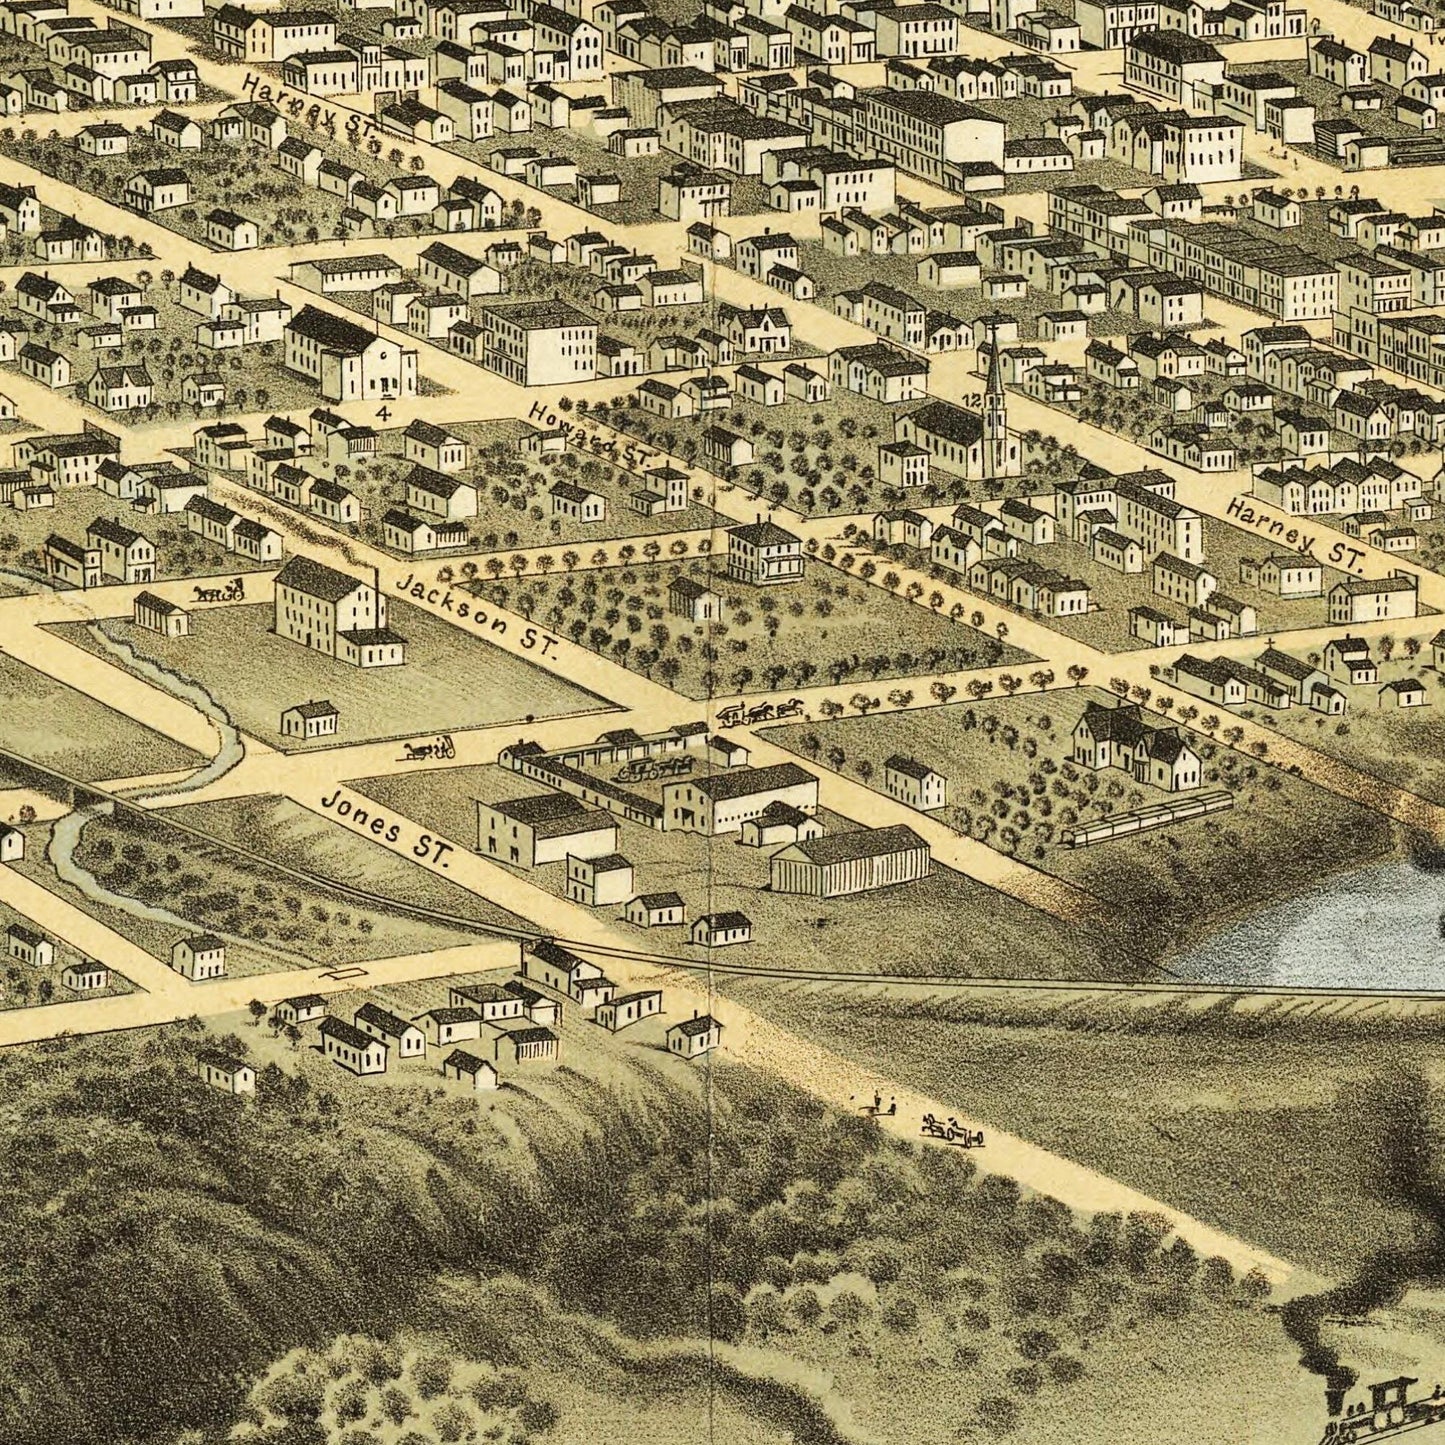 Historische Stadtansicht Omaha um 1868